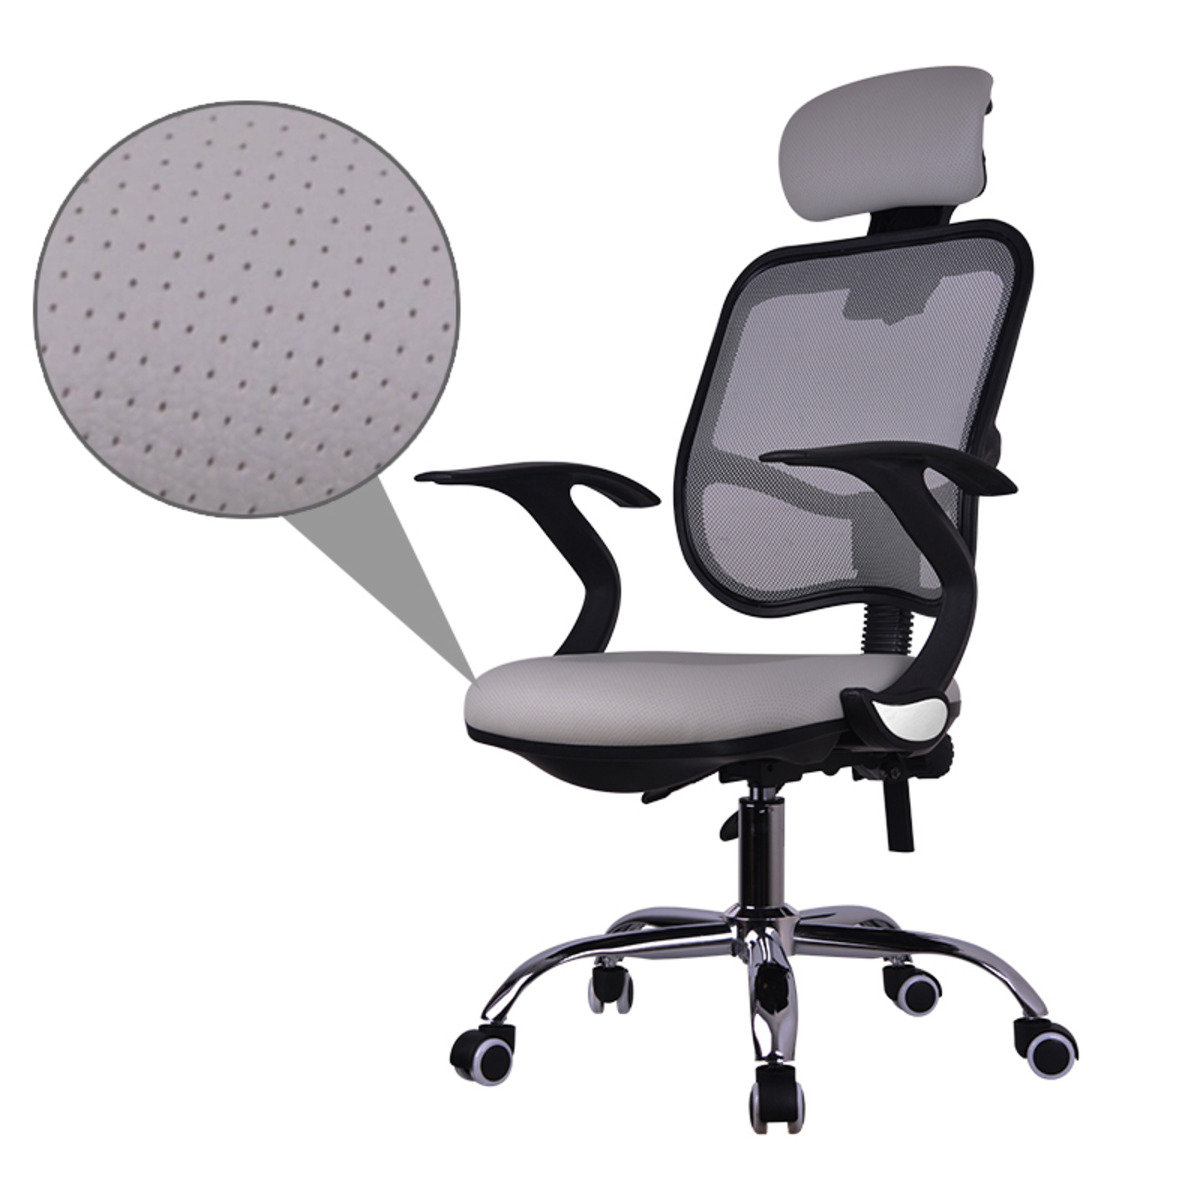 人體工學PU可半躺升降轉椅電腦椅辦公椅 MR-137B 灰色